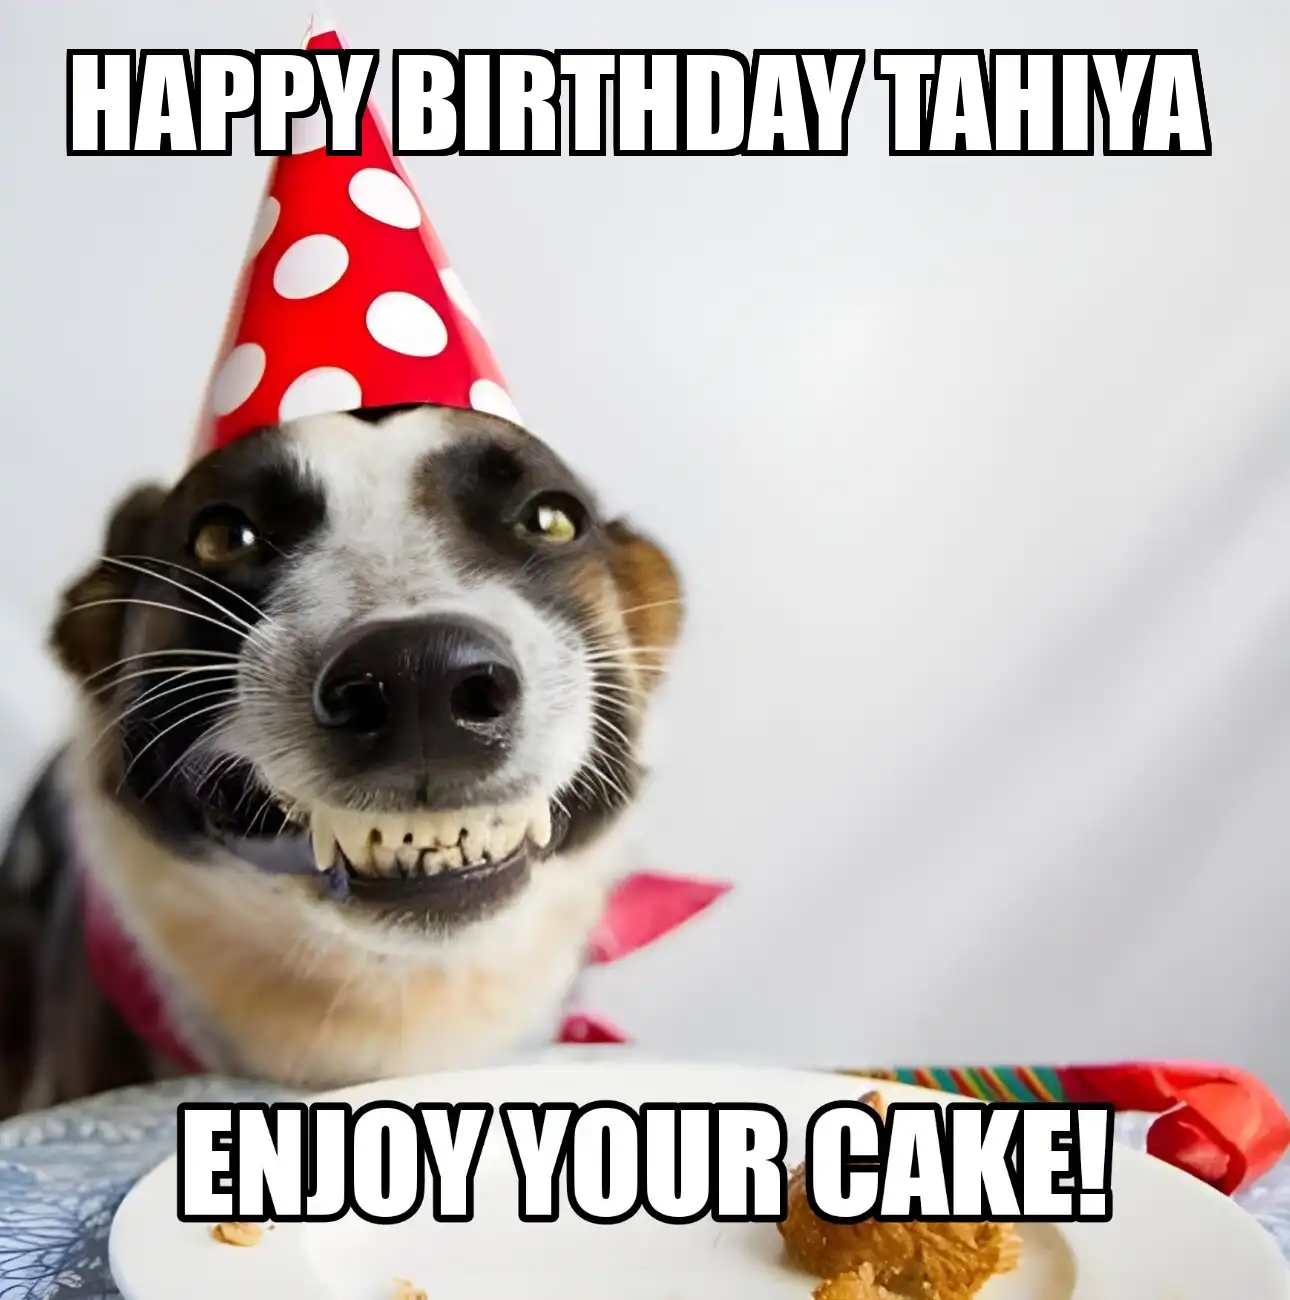 Happy Birthday Tahiya Enjoy Your Cake Dog Meme